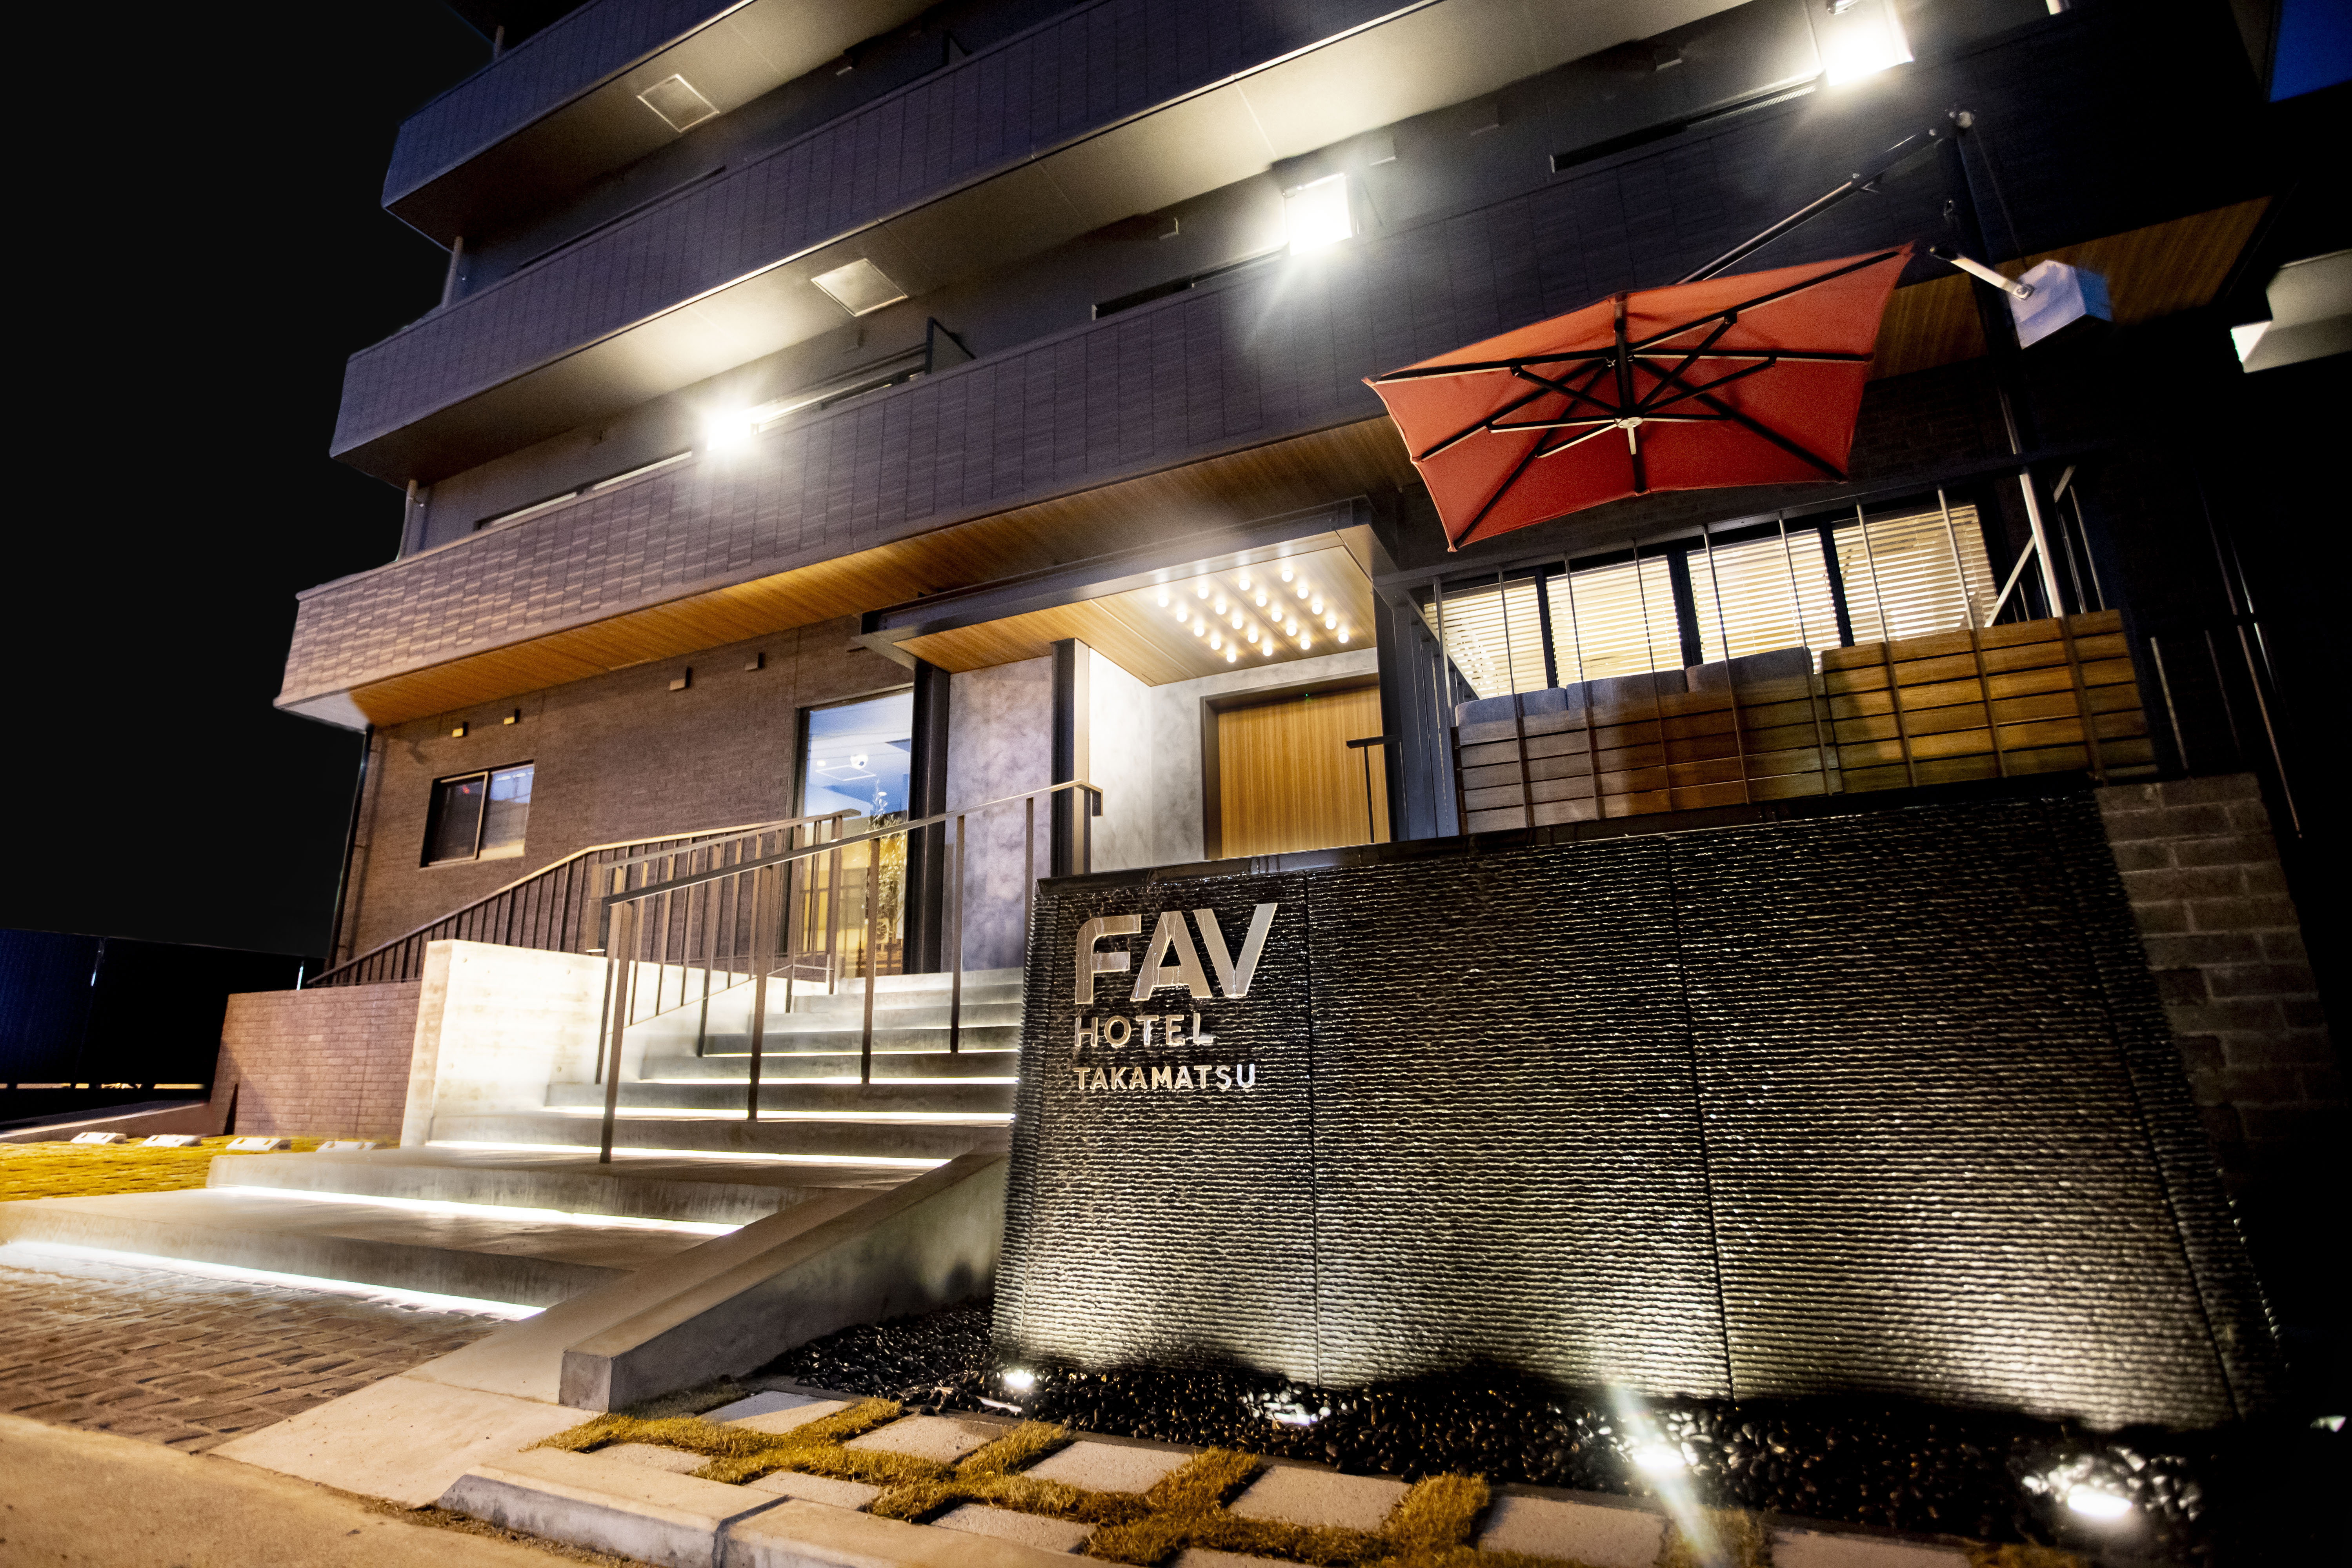 高松 Fav 飯店